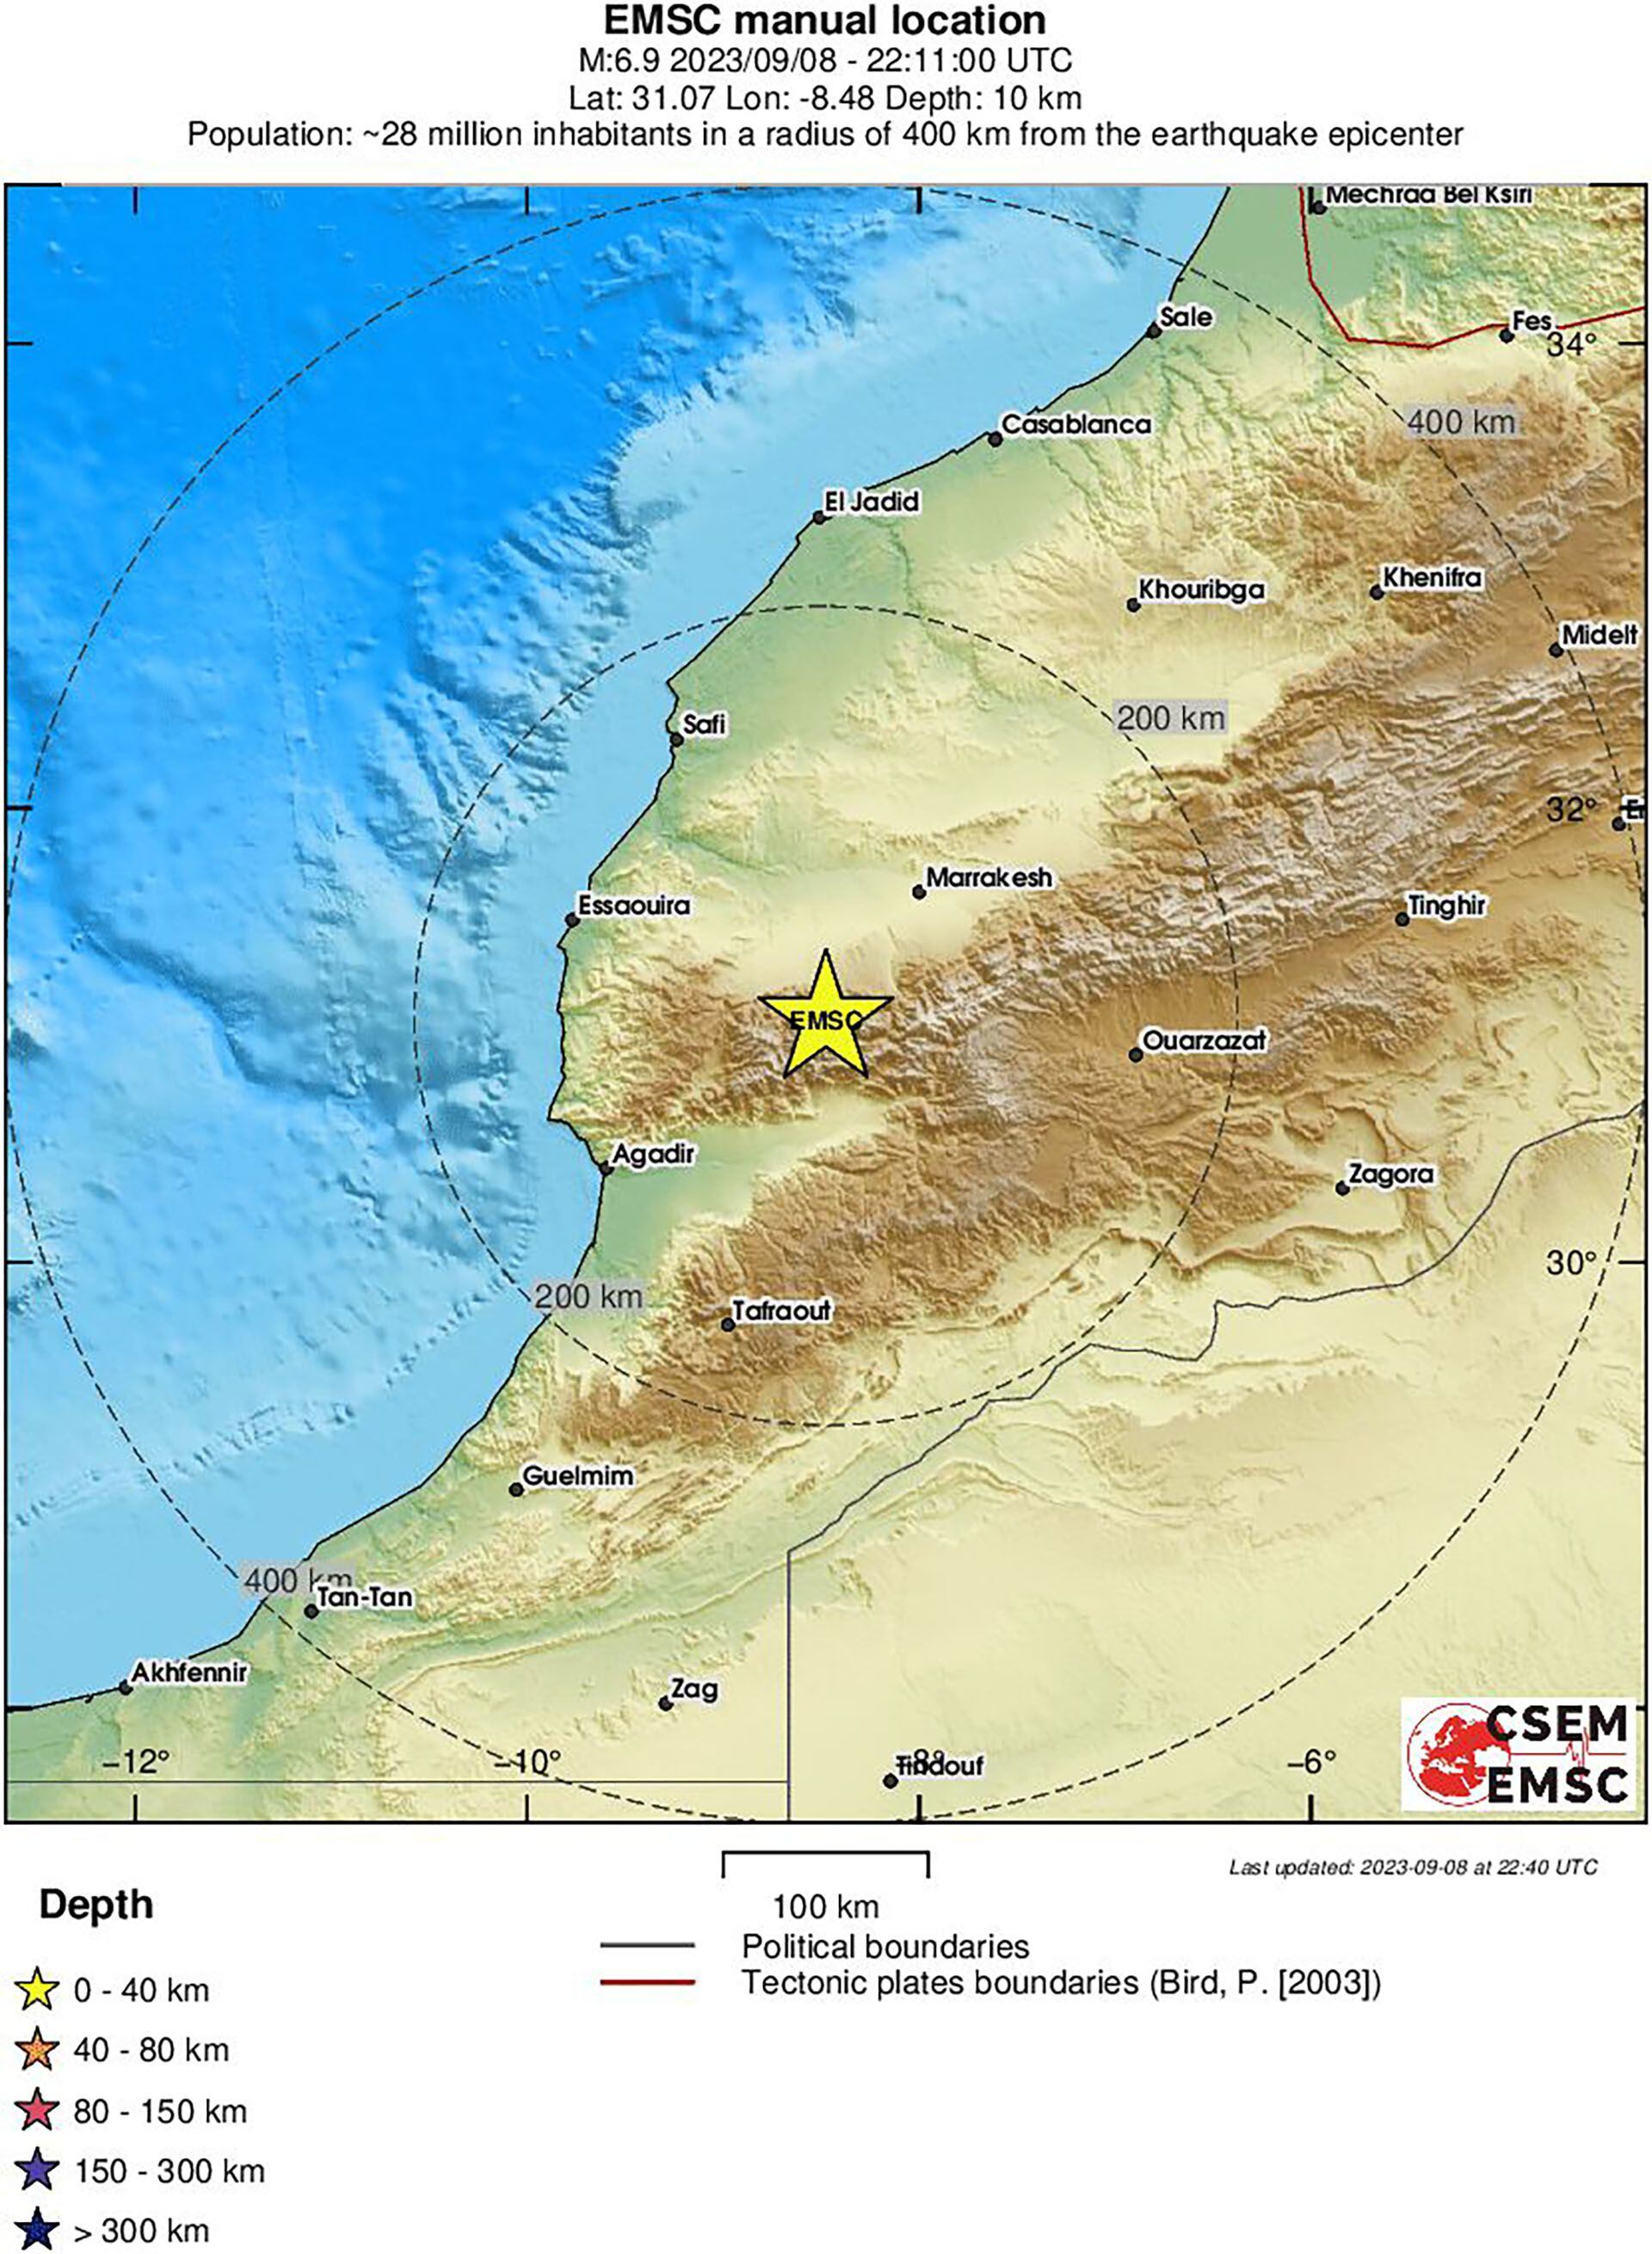 El epicentro se registró en la localidad de Ighil, situada 63 kilómetros al suroeste de la ciudad de Marrakech, a una profundidad de 8 kilómetros.